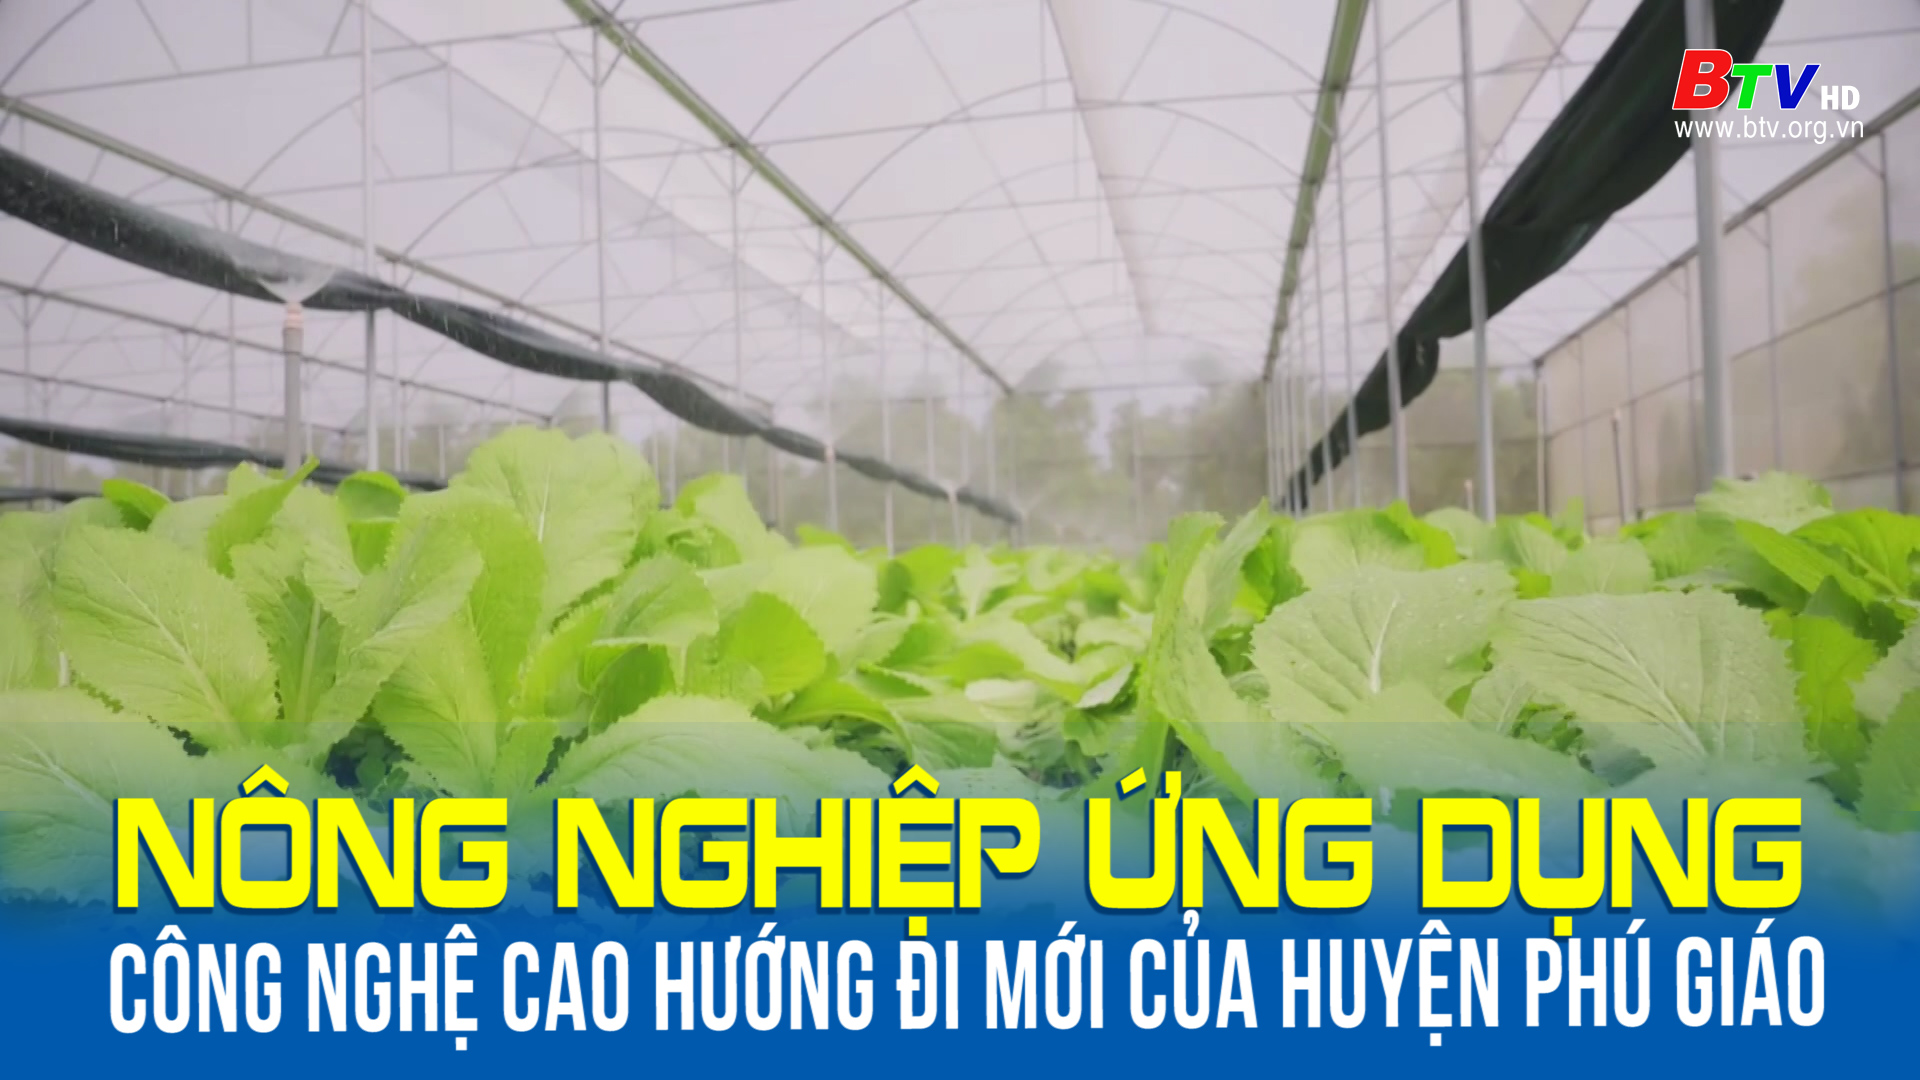 Nông nghiệp ứng dụng công nghệ cao hướng đi mới của huyện Phú Giáo